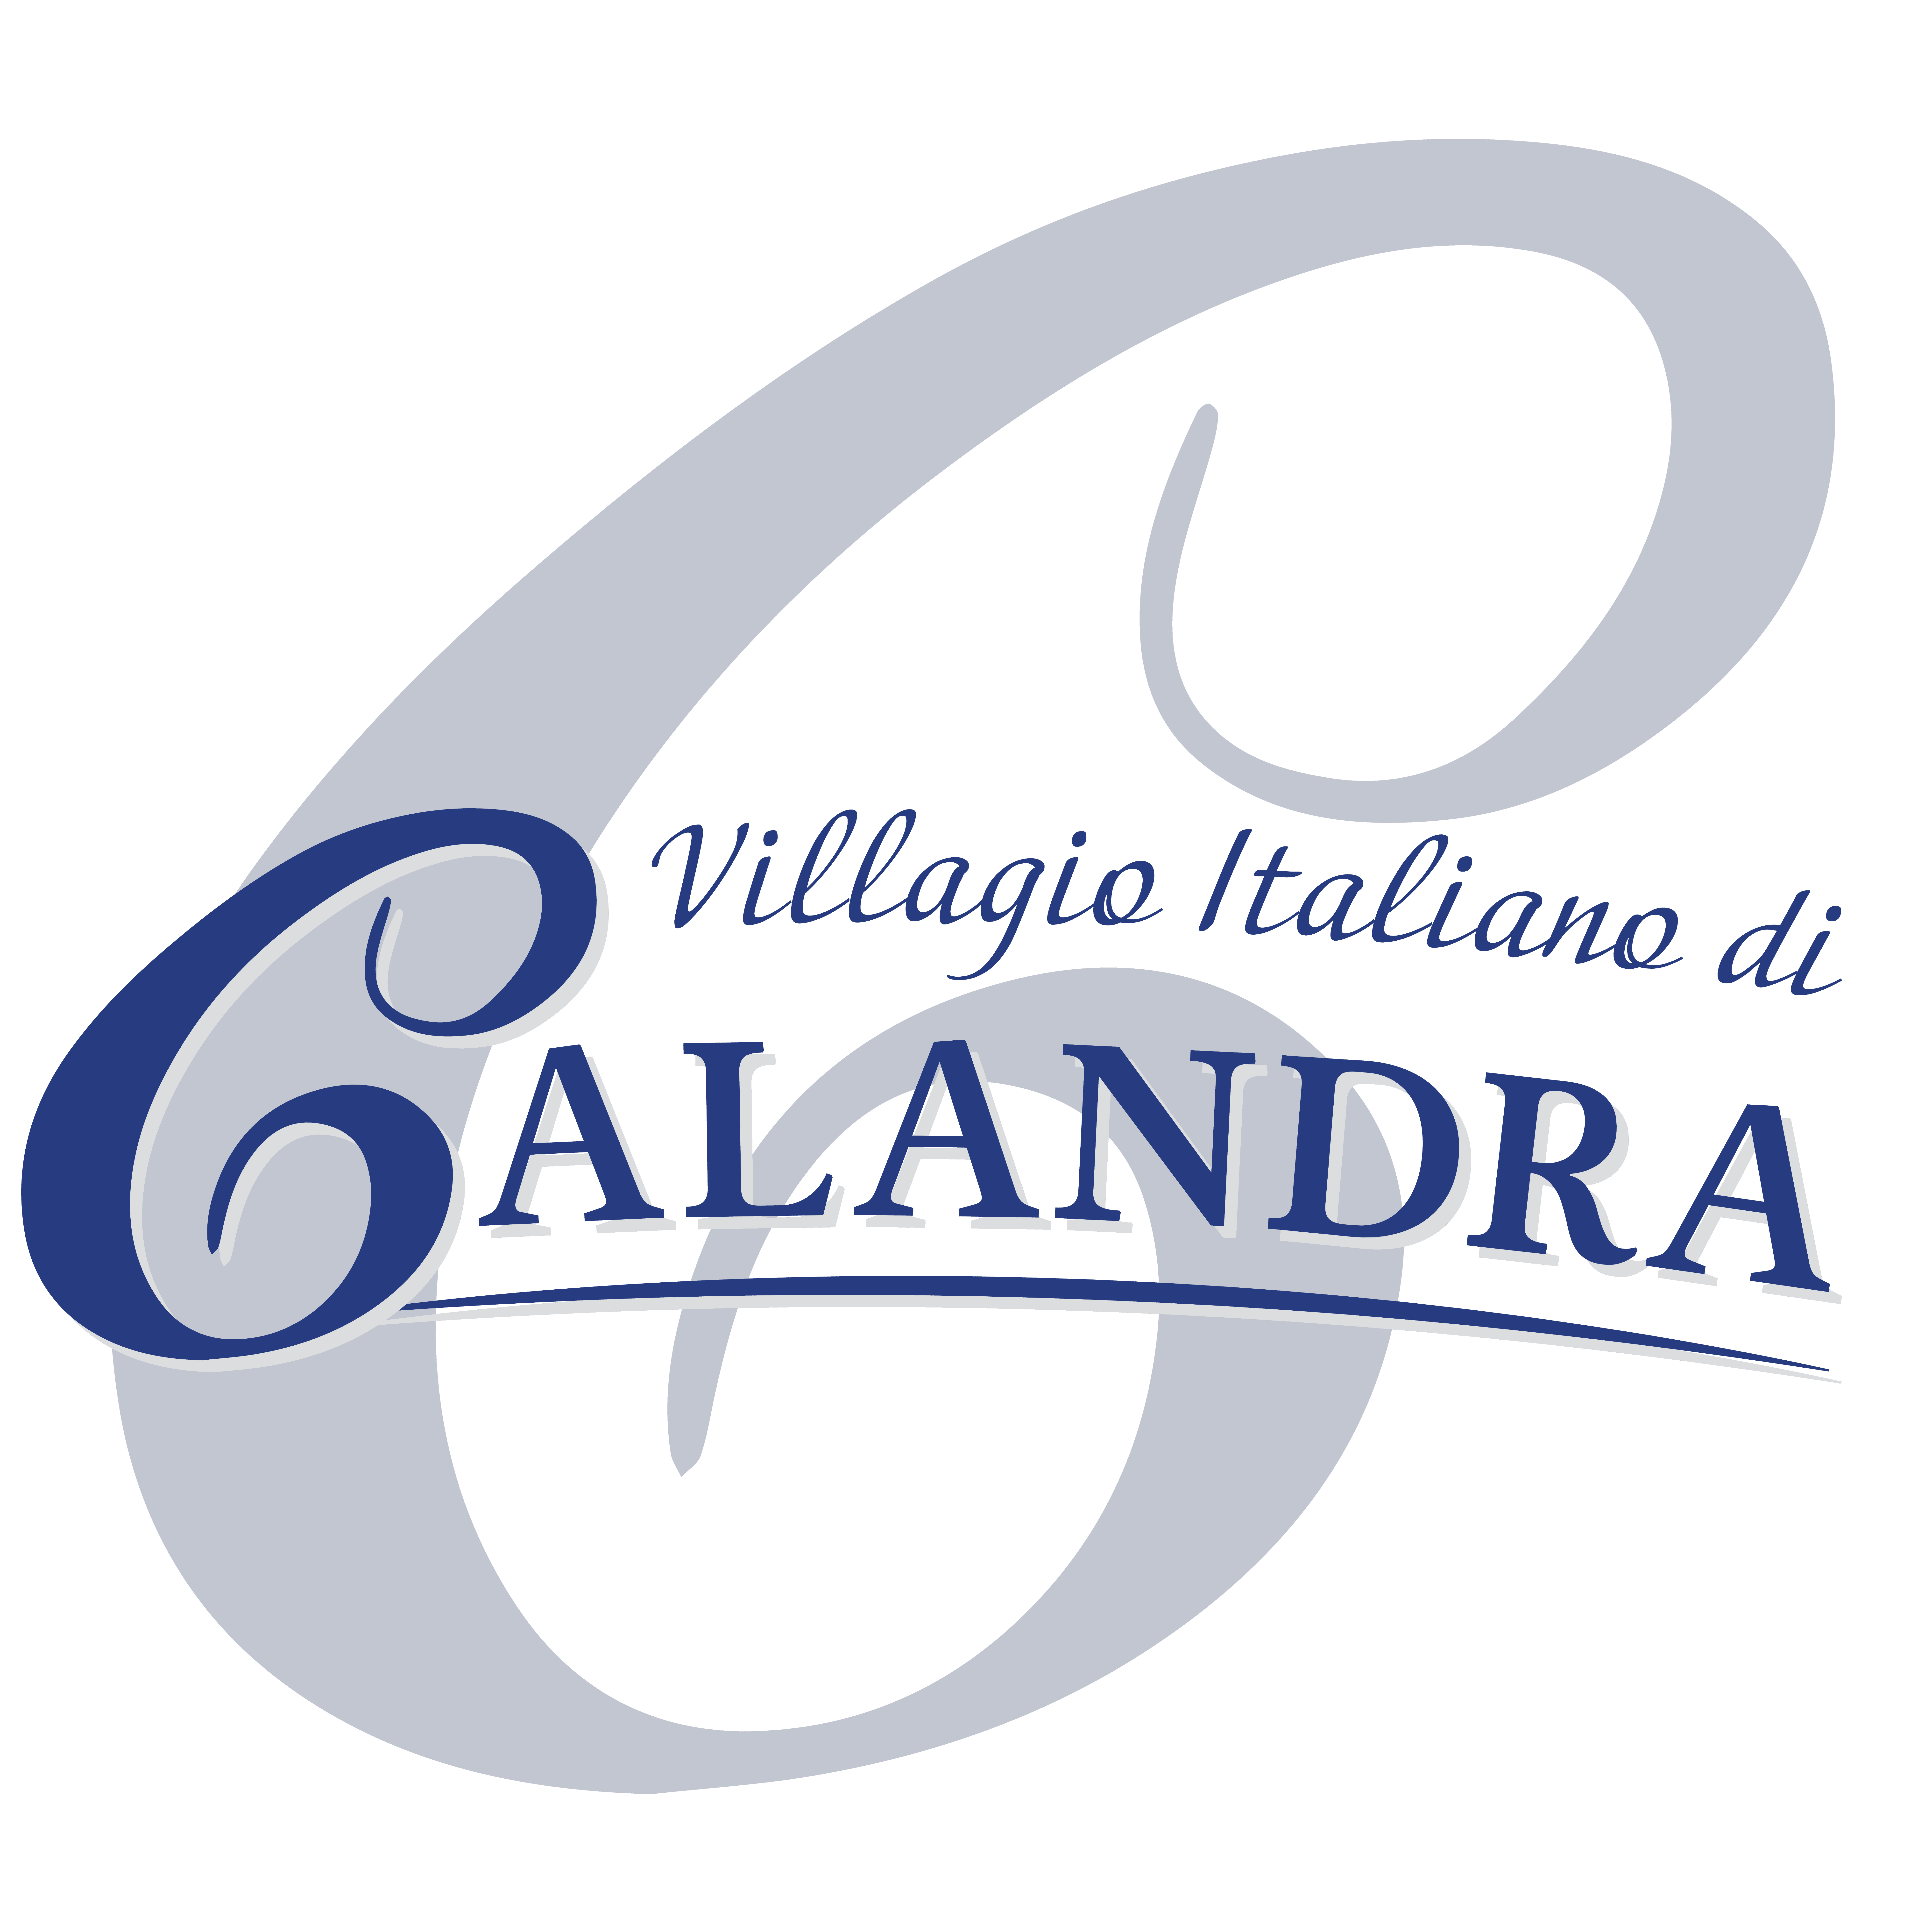 Calandra_s Italian Village Logo